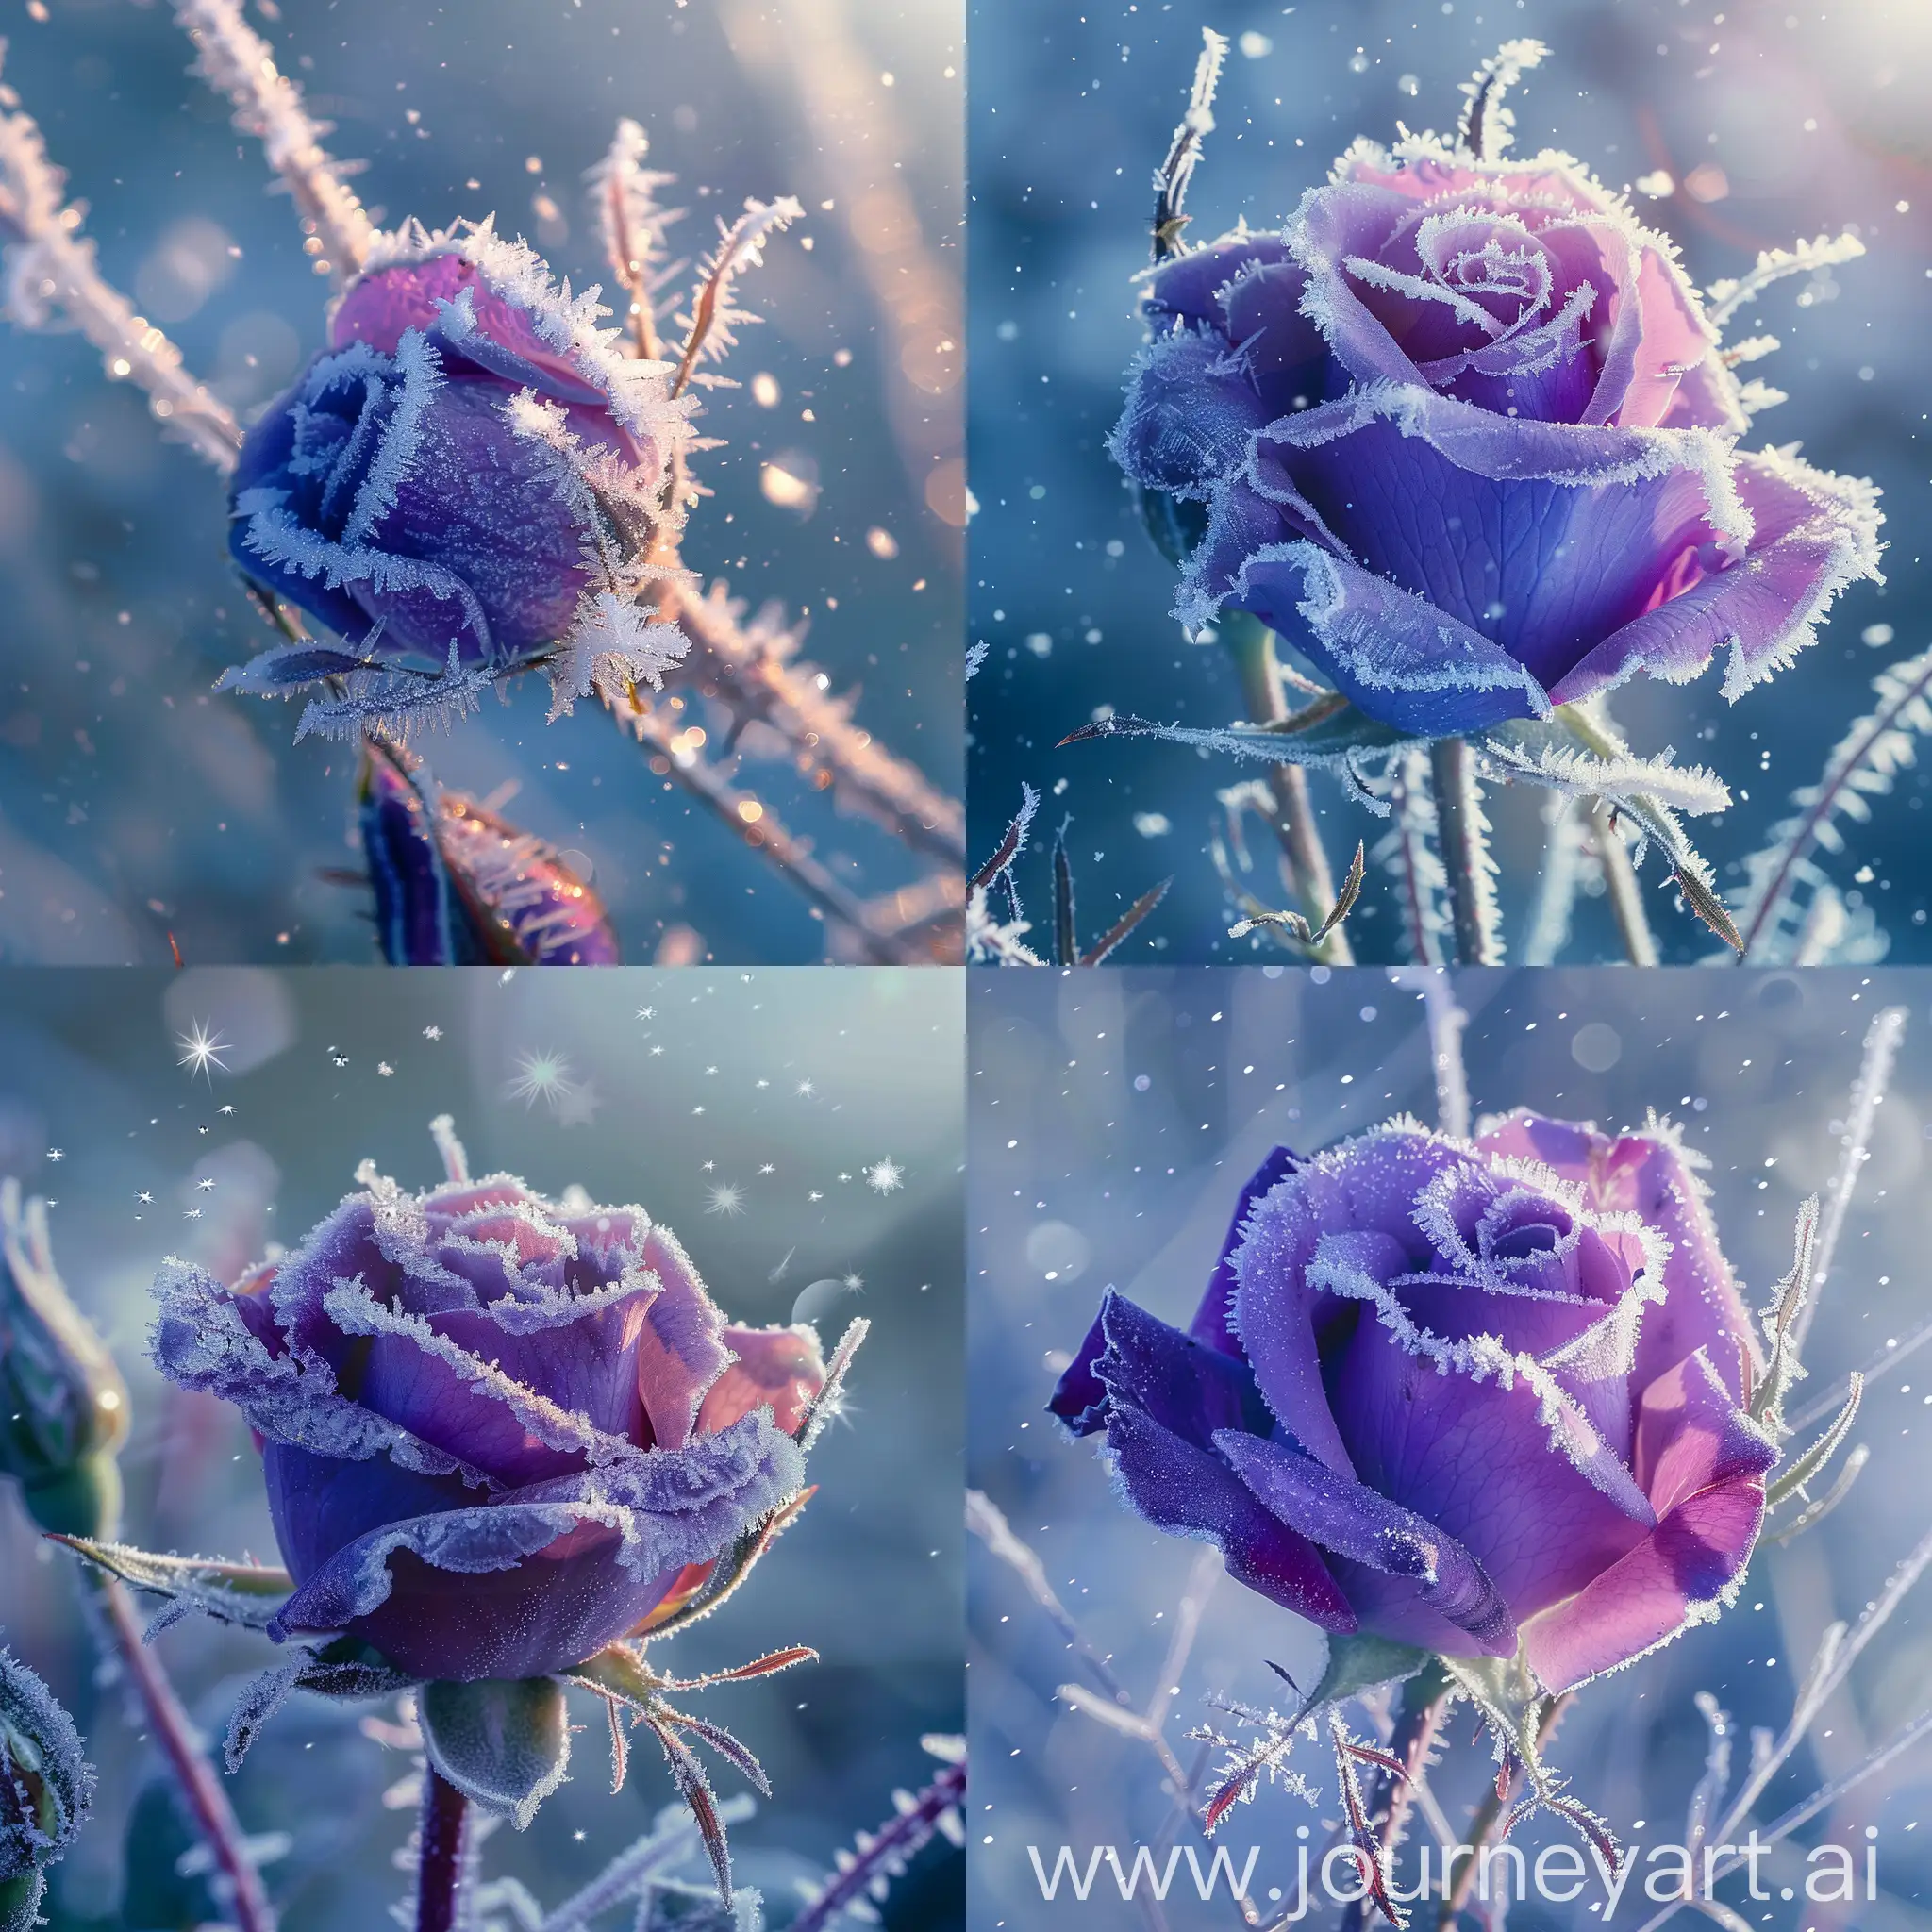 Ethereal-BlueViolet-Rose-in-Hoarfrost-Capturing-Natures-Frozen-Elegance